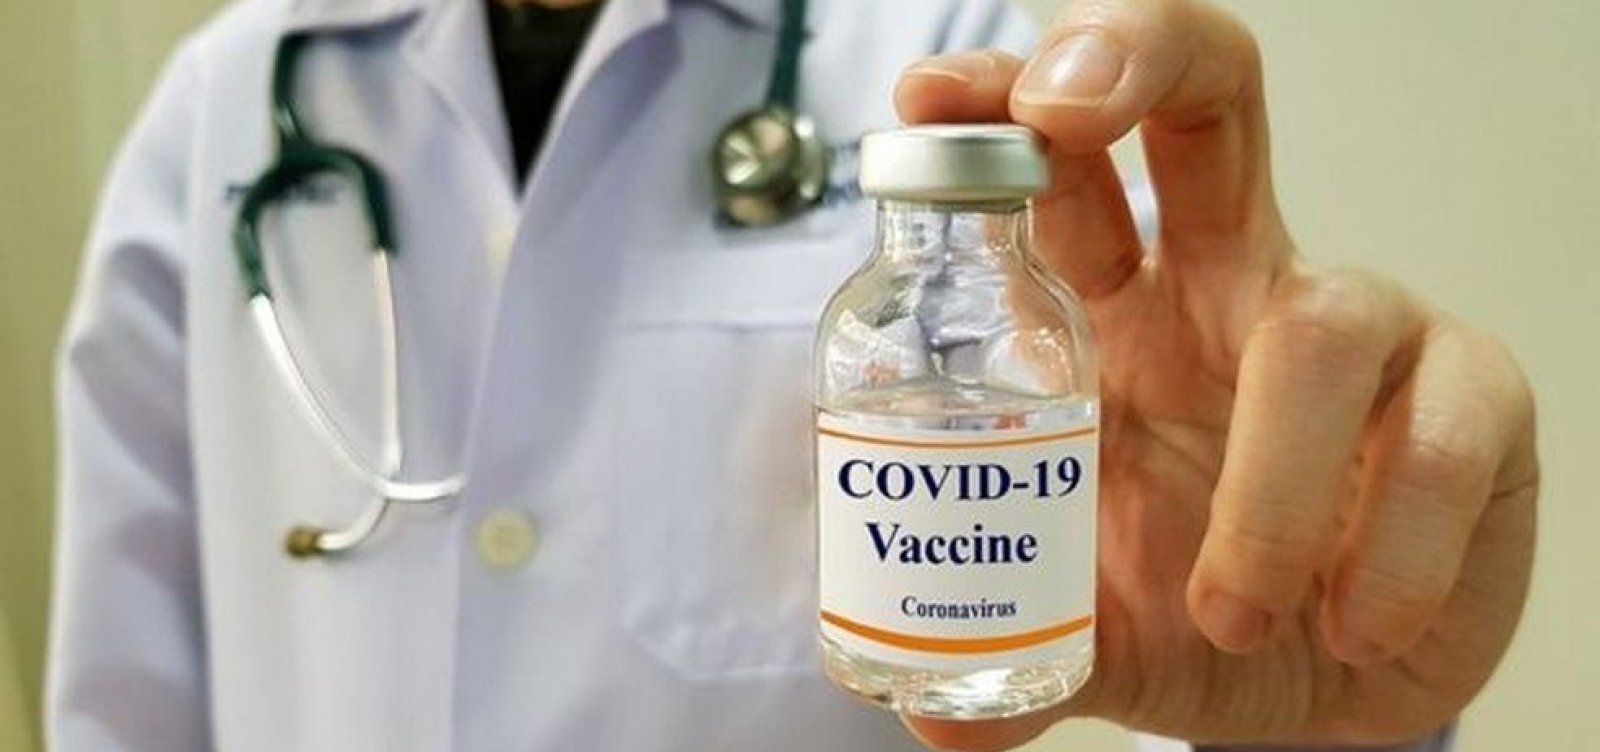 [Fiocruz aposta em vacinação contra Covid-19 em fevereiro de 2021]